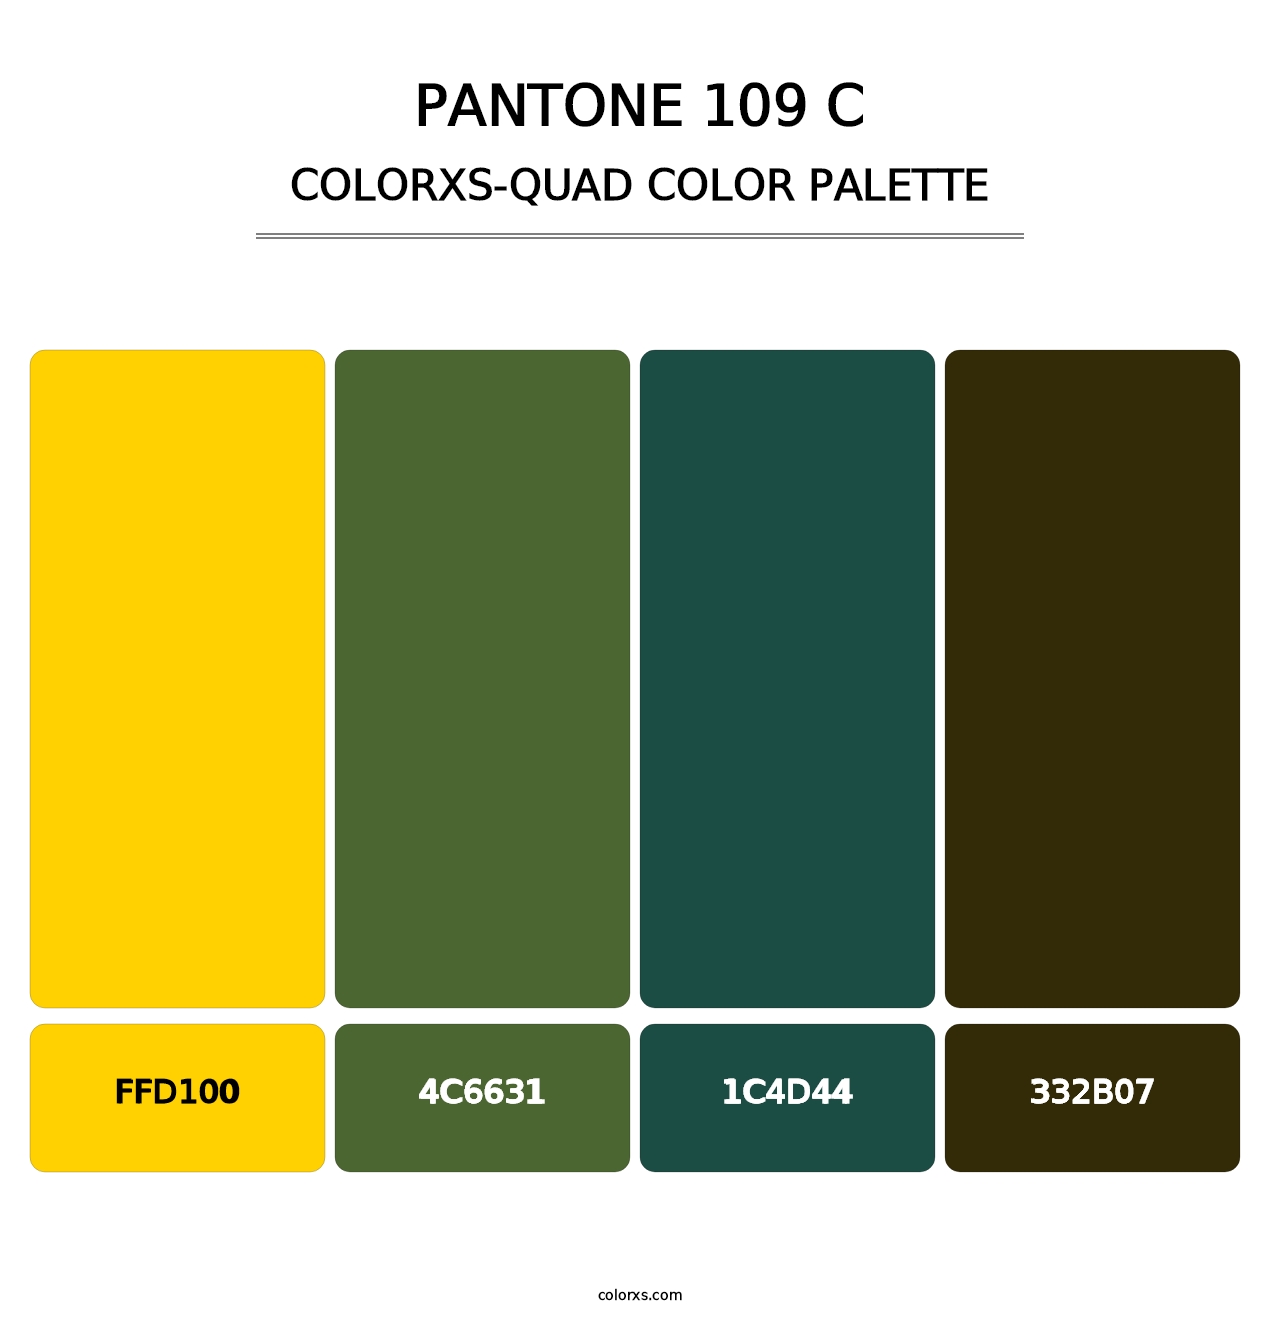 PANTONE 109 C - Colorxs Quad Palette